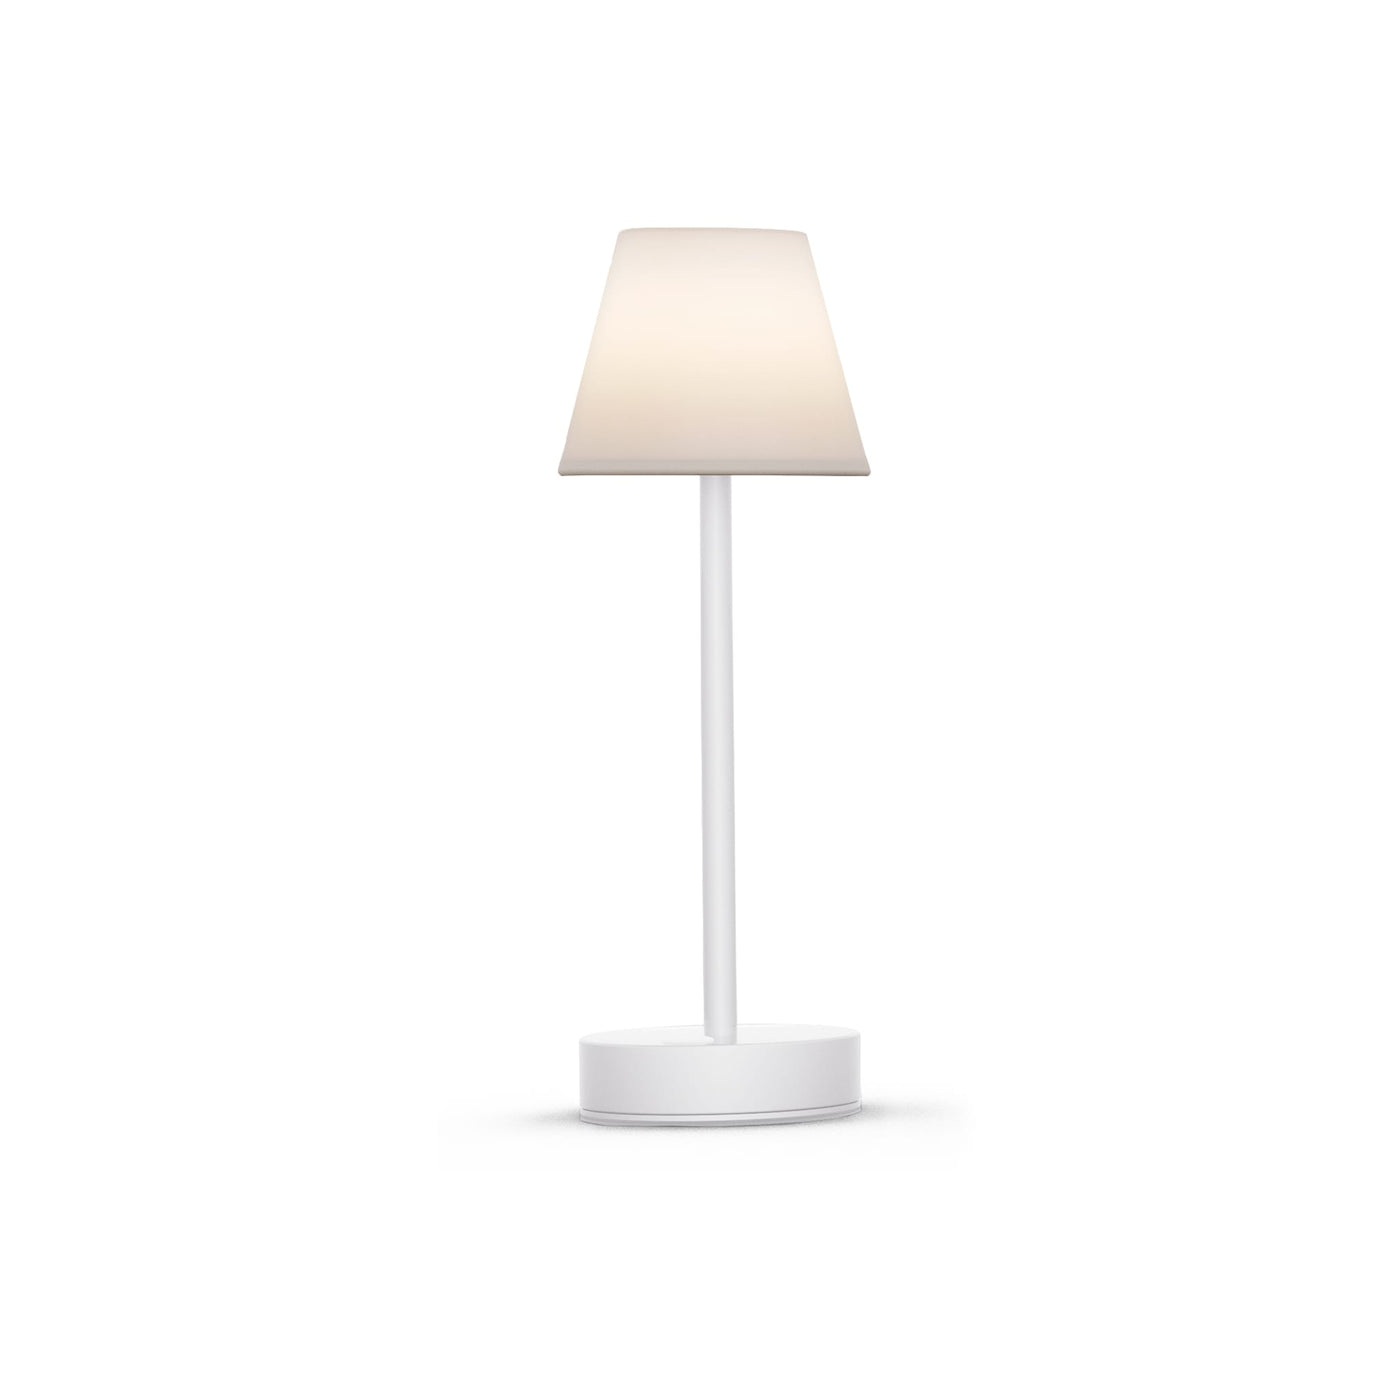 Lampe de table Lola Slim 30 : LED RVB, design mince, intensité réglable, bouton tactile. Parfaite pour un éclairage élégant et pratique. Blanc.